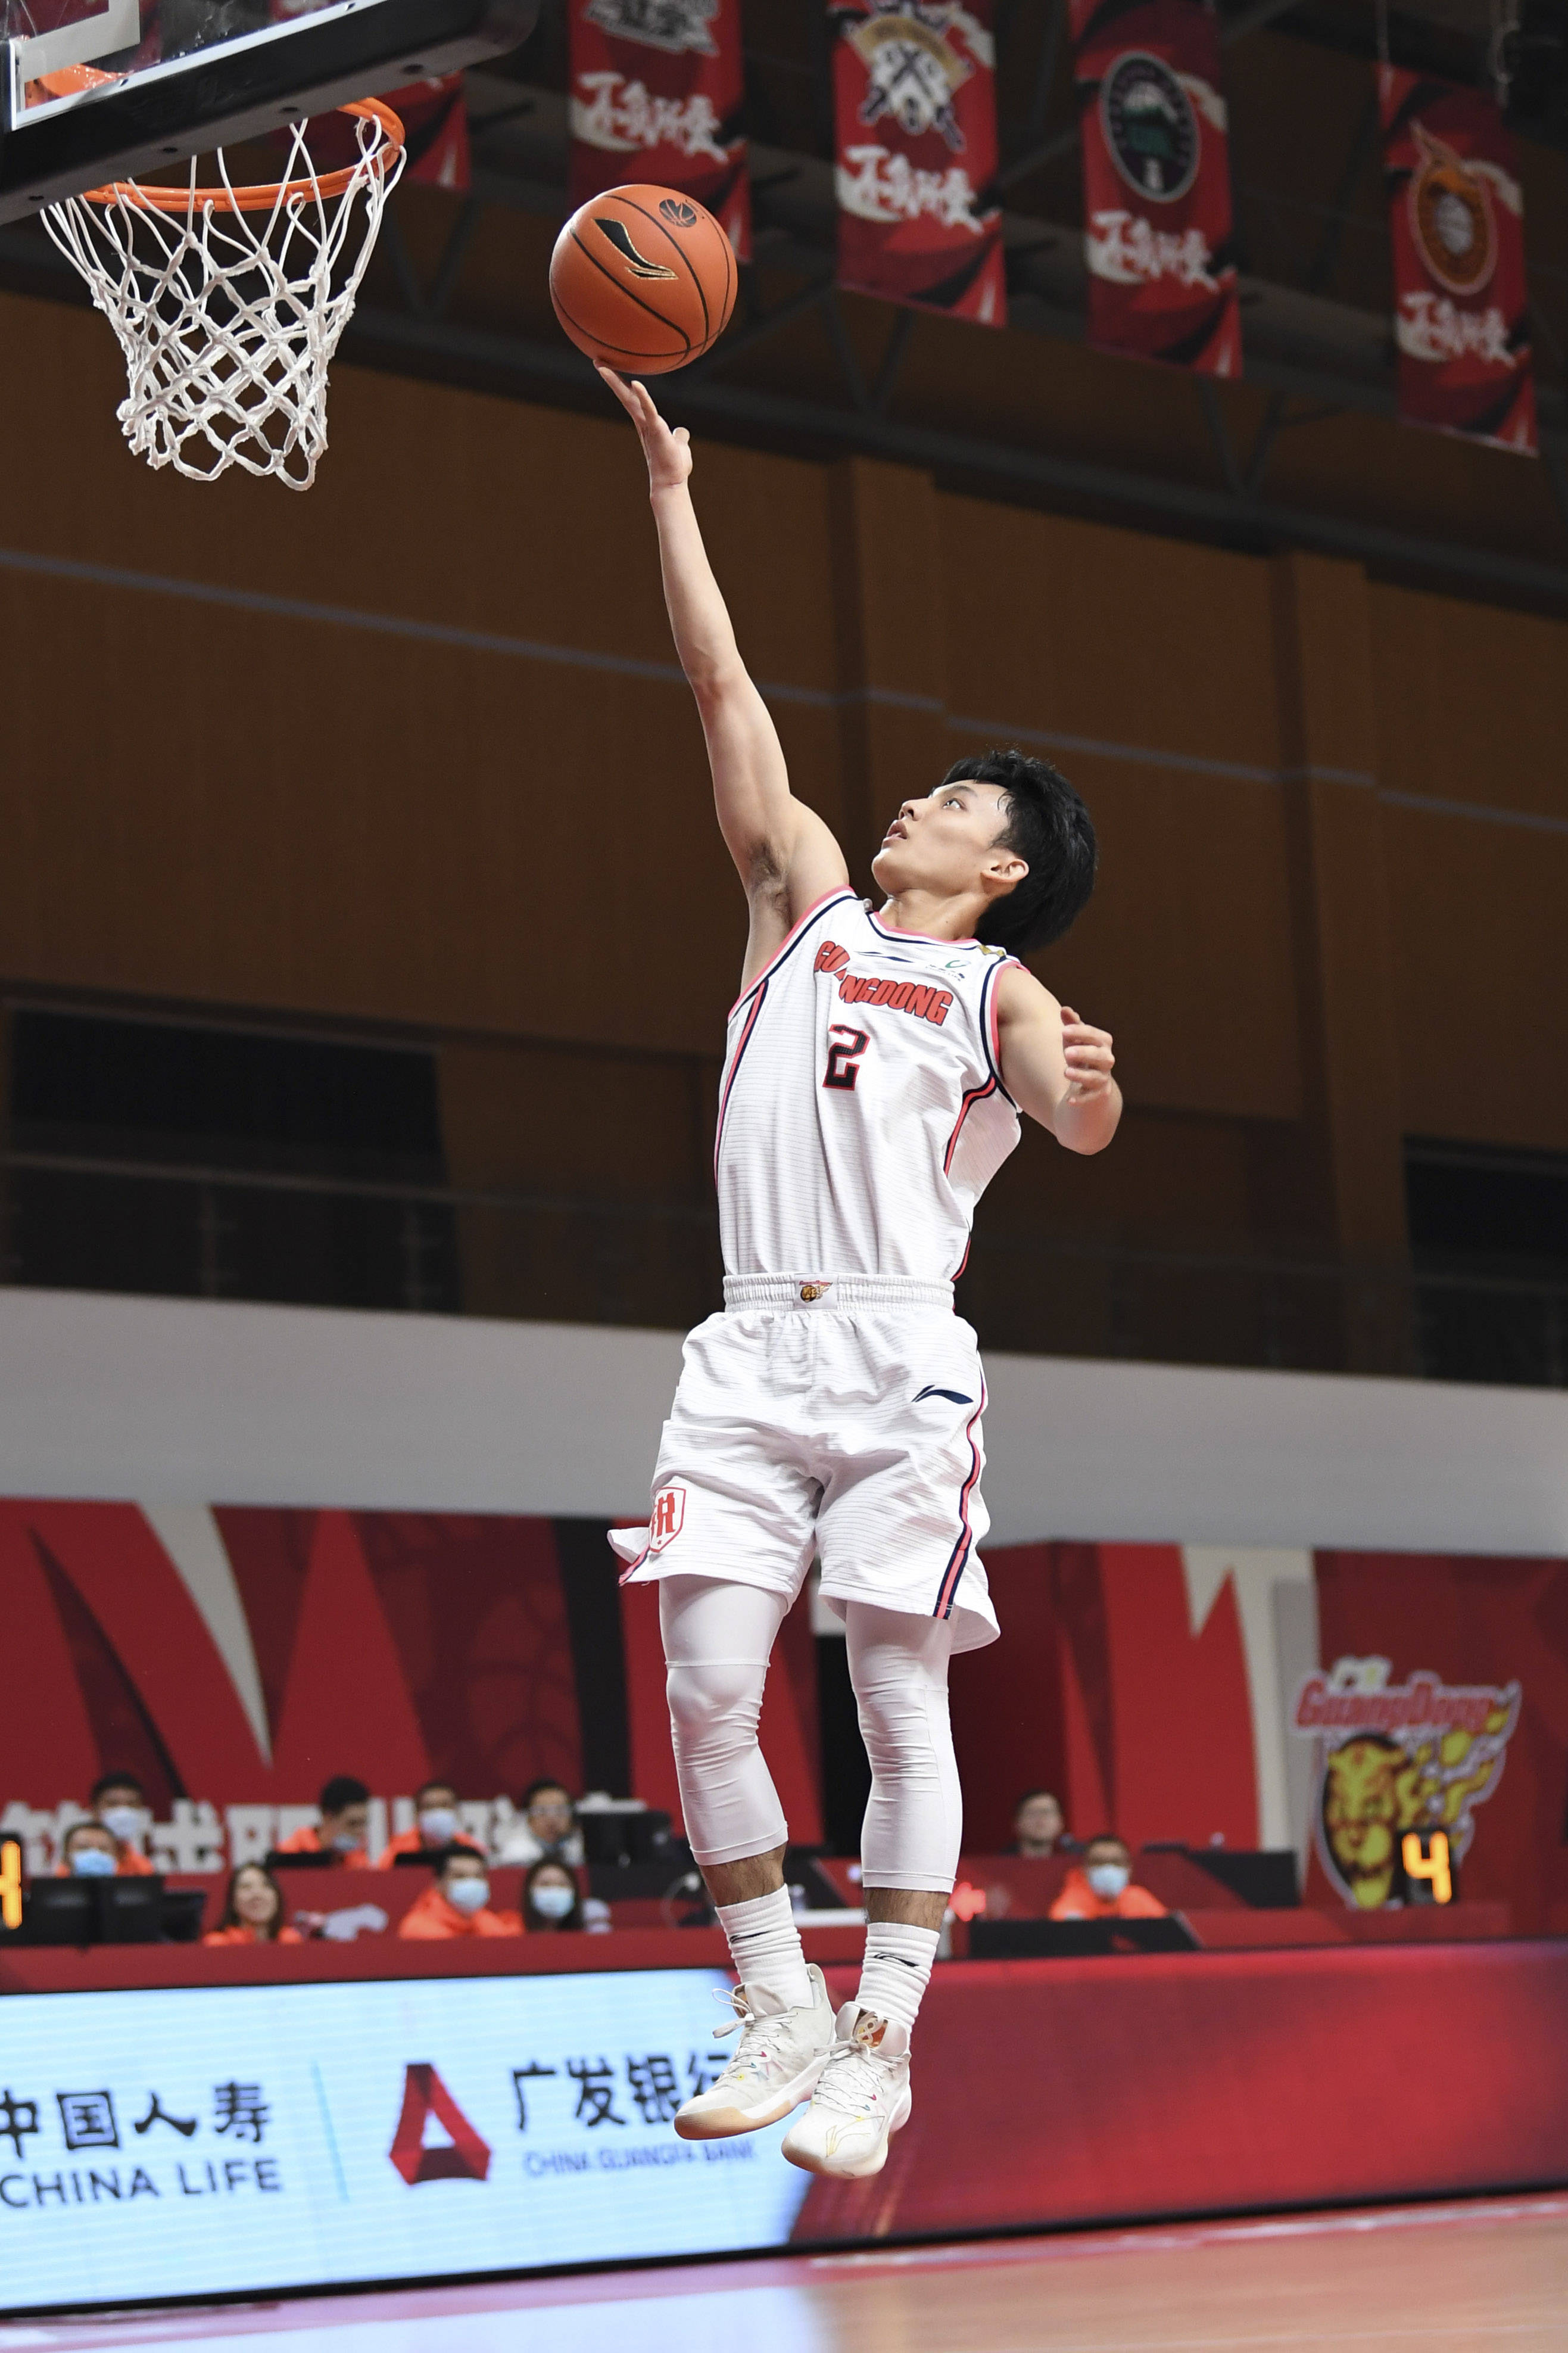 11月7日,广东东莞大益球员徐杰在比赛中上篮